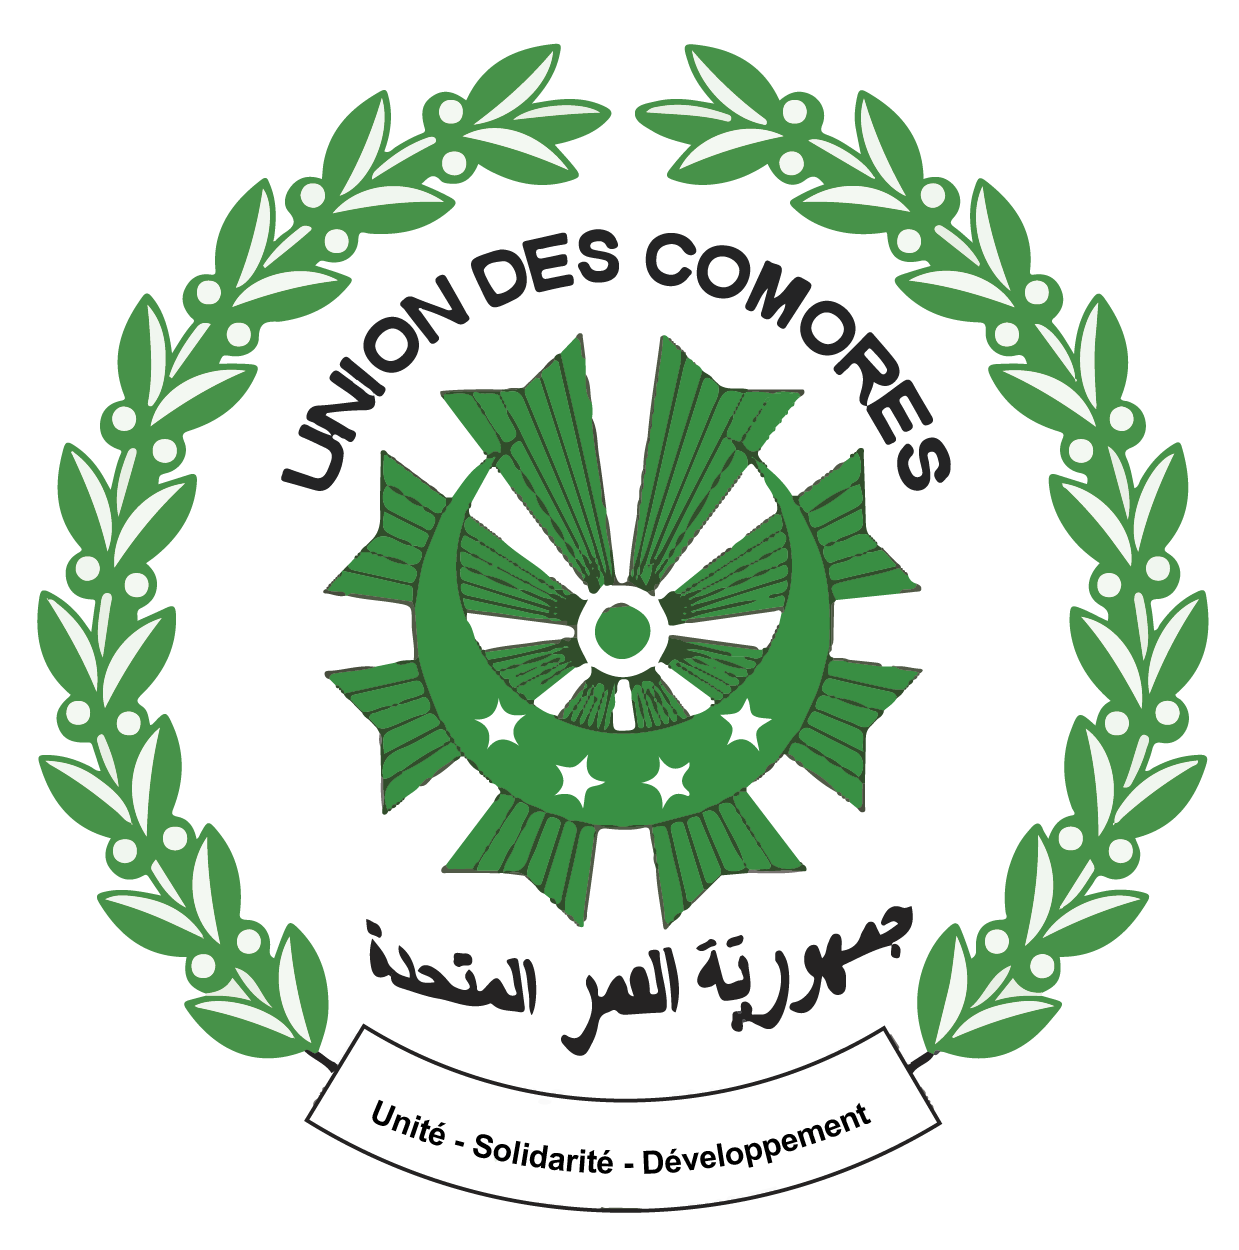 Bienvenue sur le compte twitter Officiel de Beit Salam, Compte de la présidence de l'Union des Comores 🇰🇲. Voici notre site web officiel➡ https://t.co/WBGwtcgCza